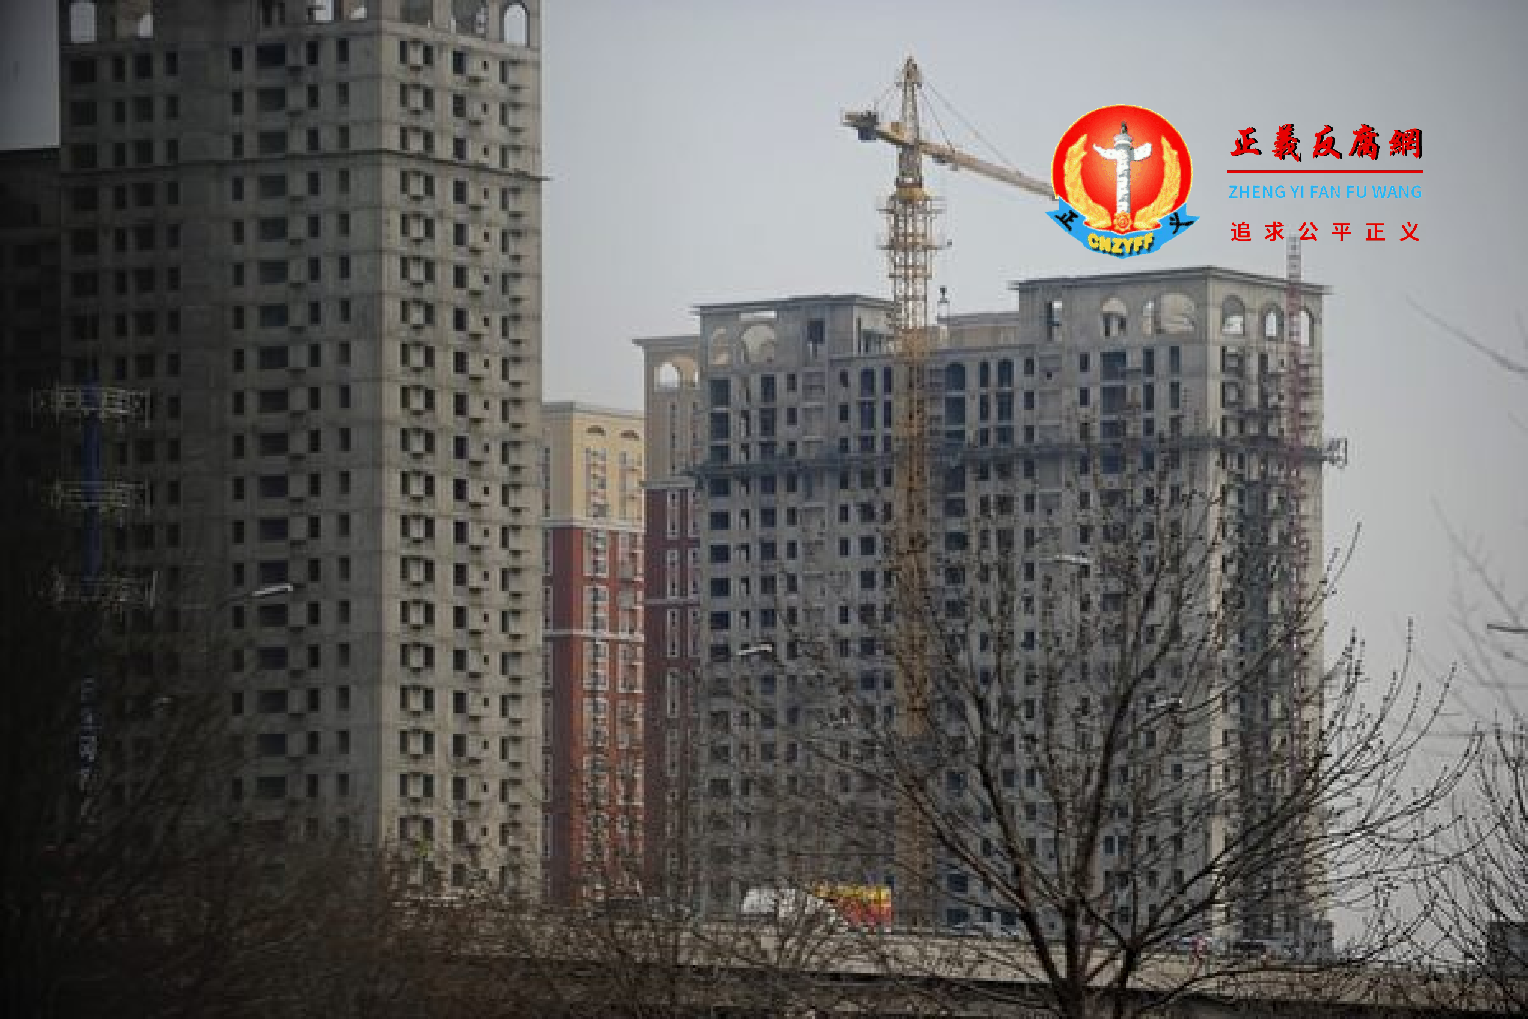 中国建筑第八工程局有限公司近日再次曝出“豆腐渣工程”。.png